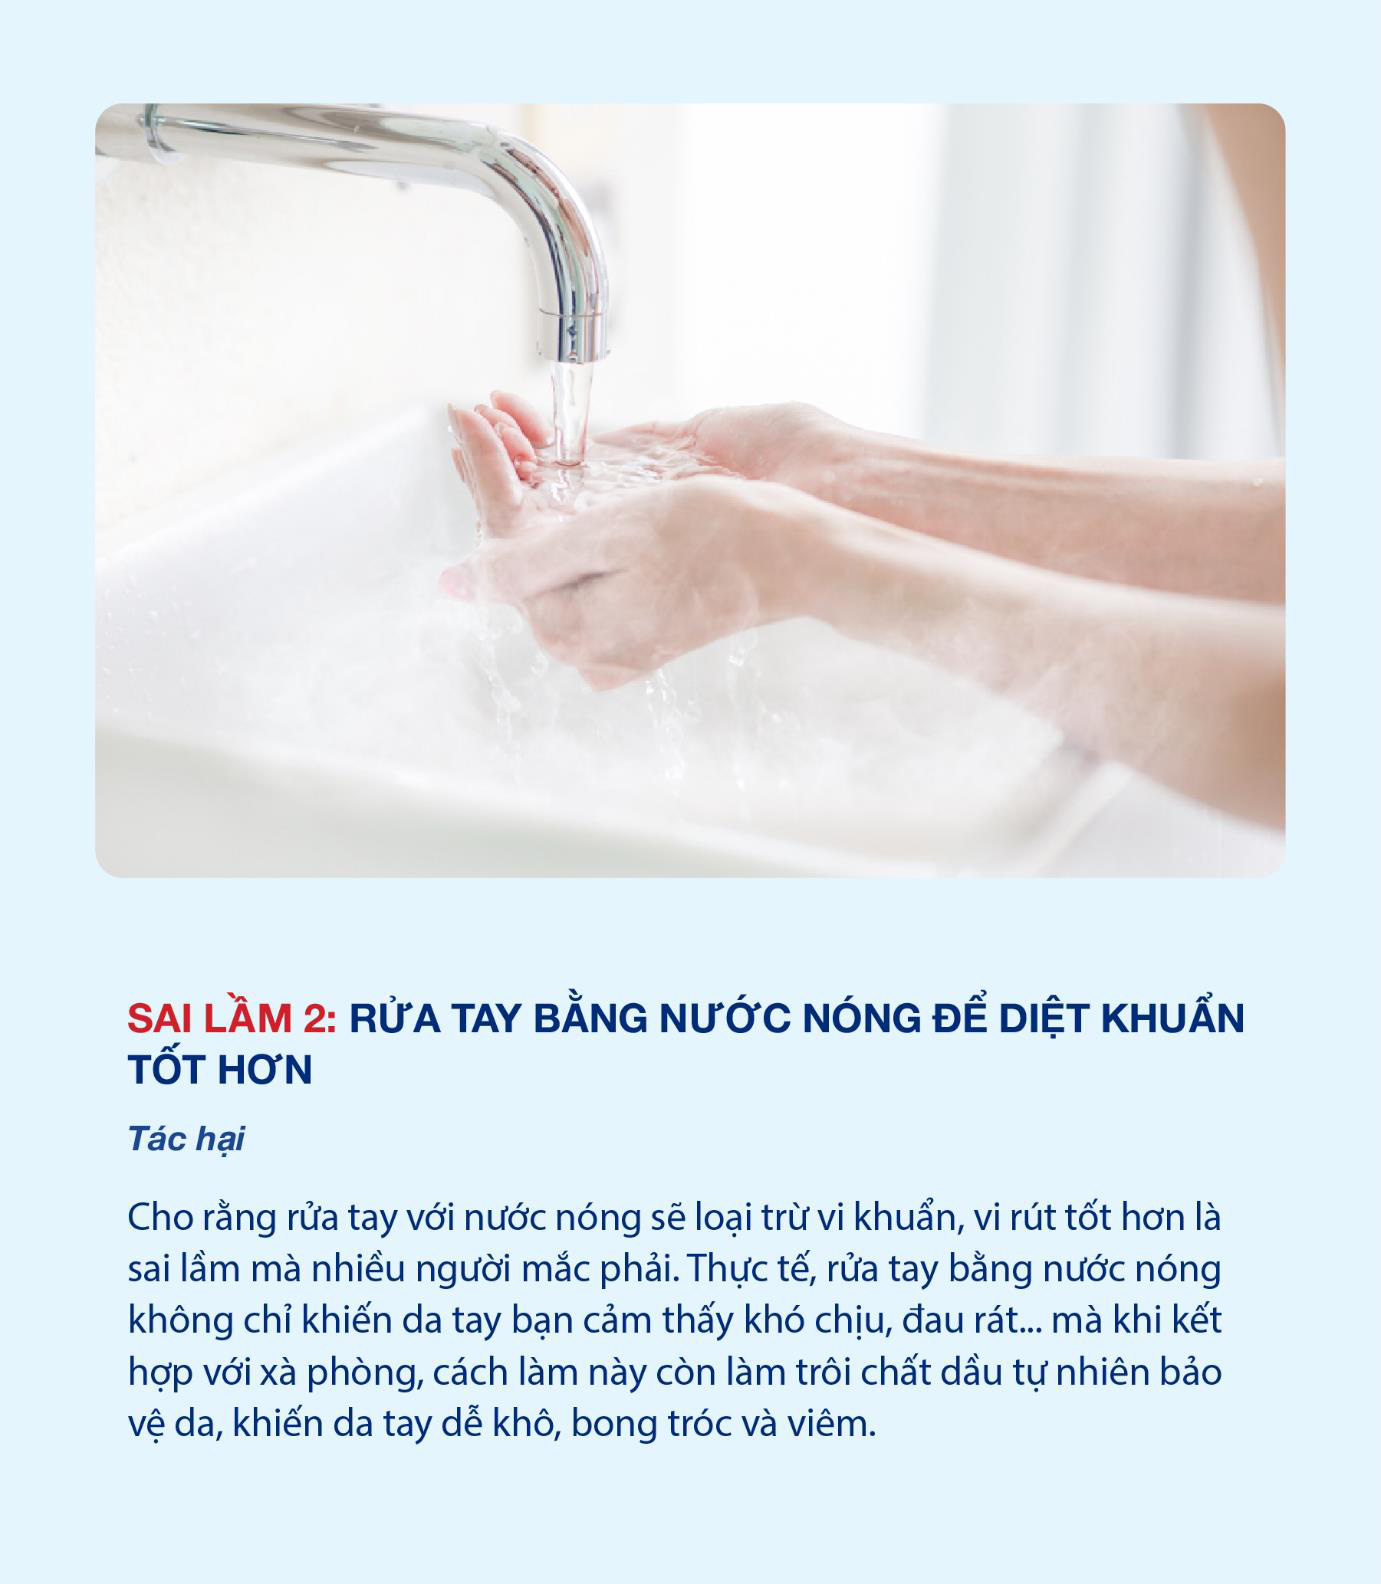 Hiệu quả phòng bệnh của rửa tay bằng xà phòng trở nên kém hiệu quả chỉ vì 3 sai lầm sau - Ảnh 3.